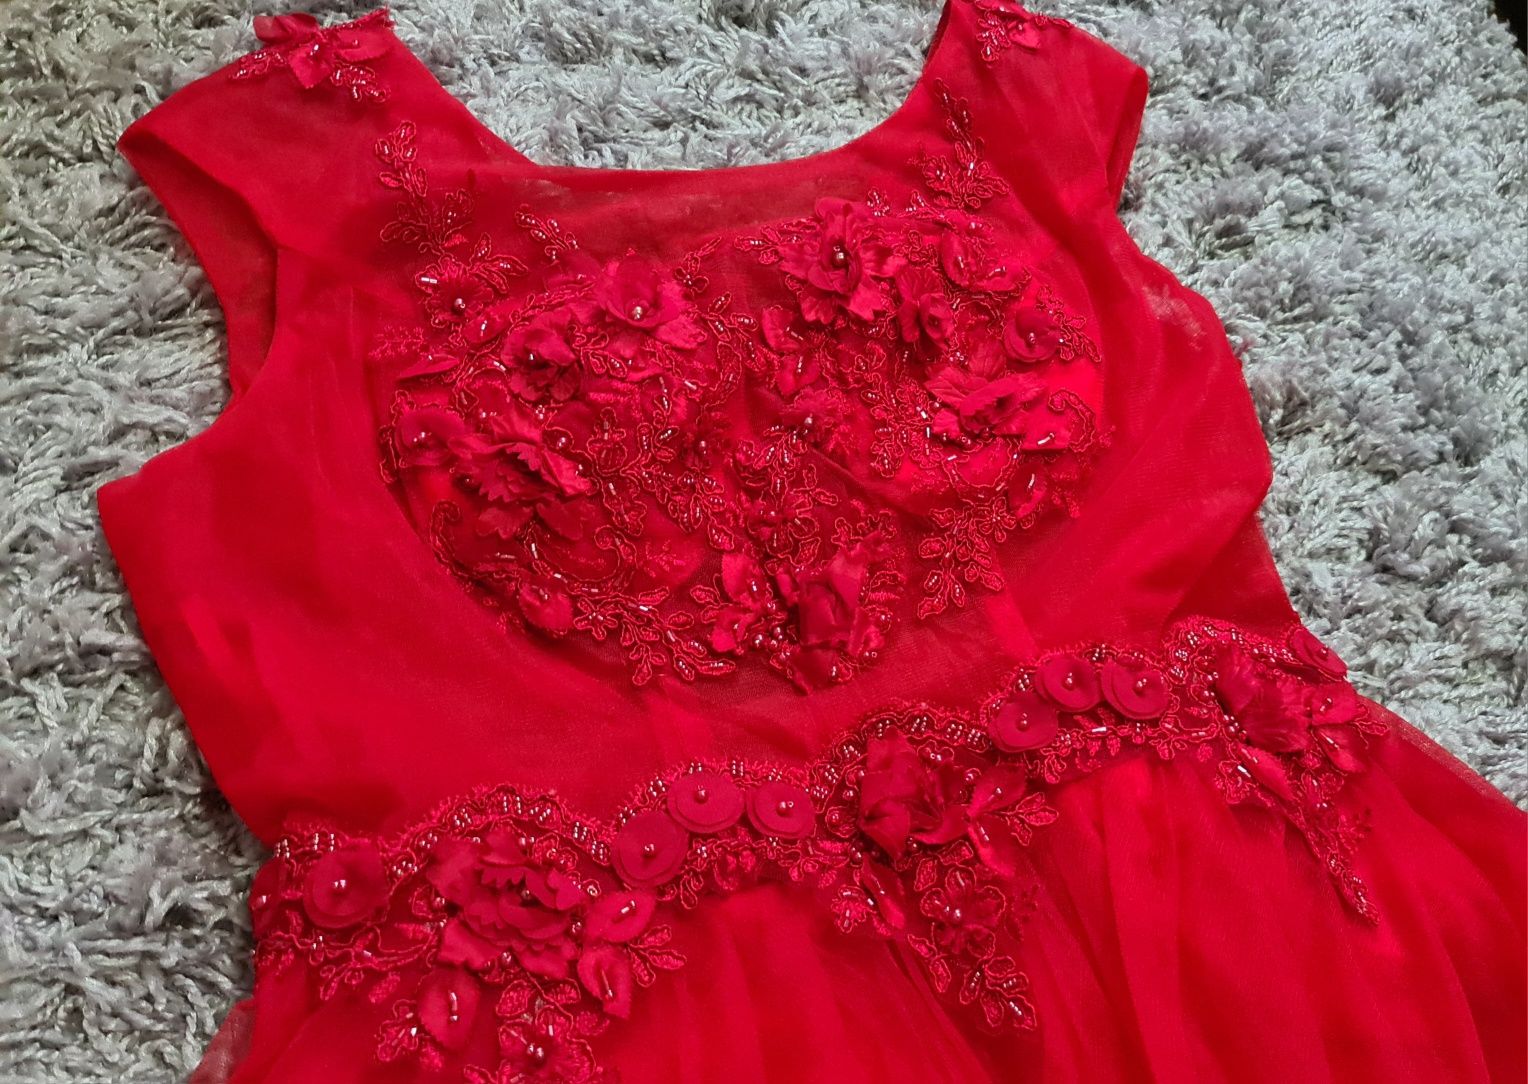 Vând rochie de ocazie roșie, lungă din voal cu aplicații dantelă 40-42